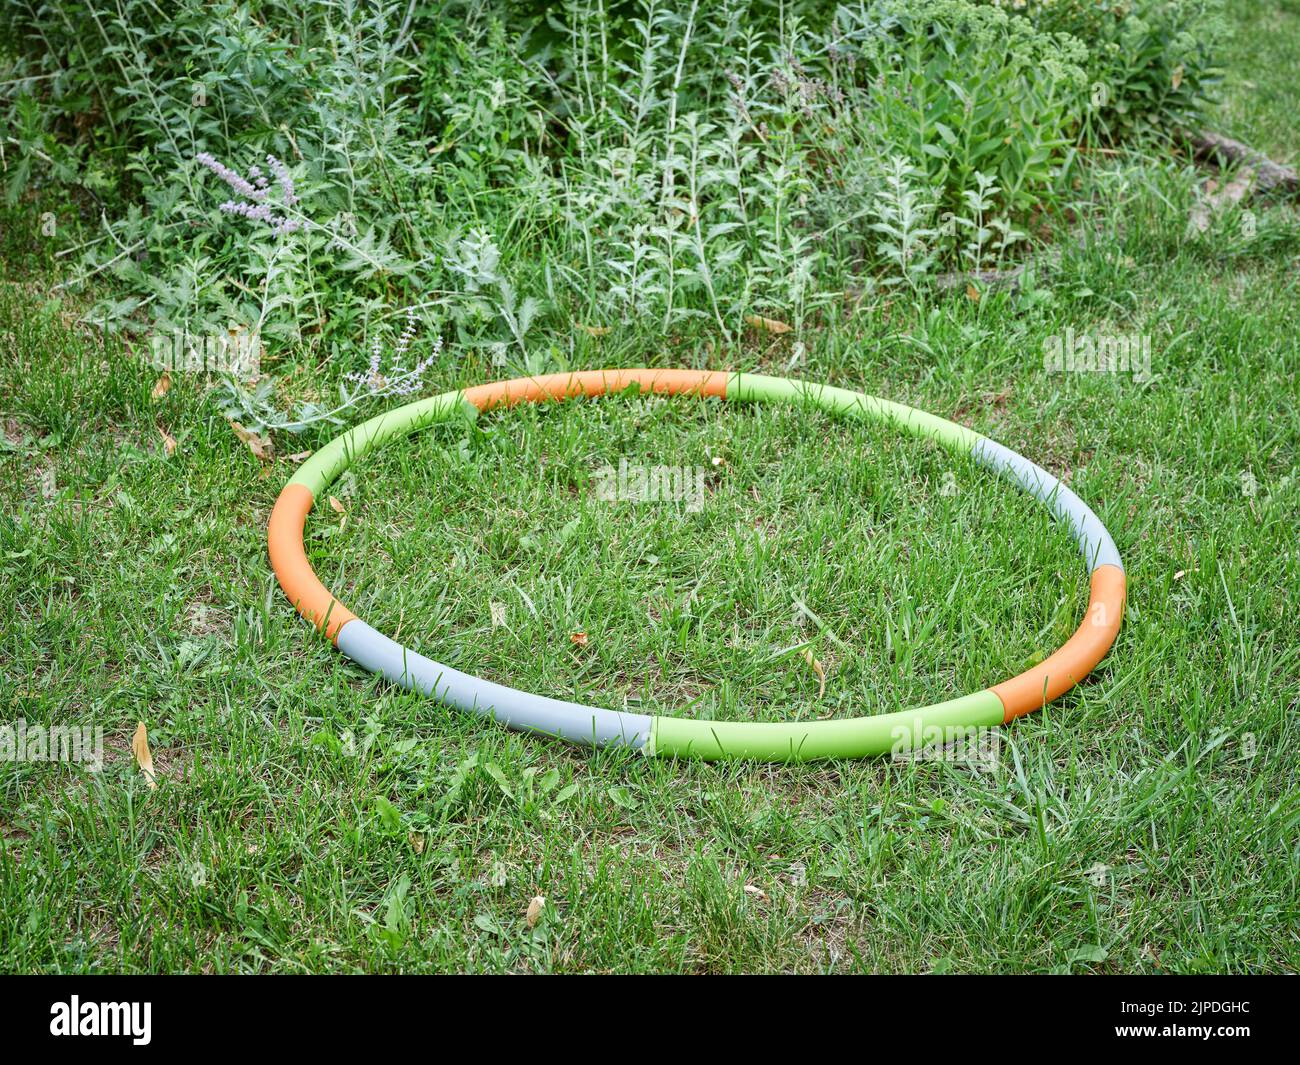 aro de hula ponderado en un jardín de patio trasero en paisaje de verano, concepto de entrenamiento básico Foto de stock